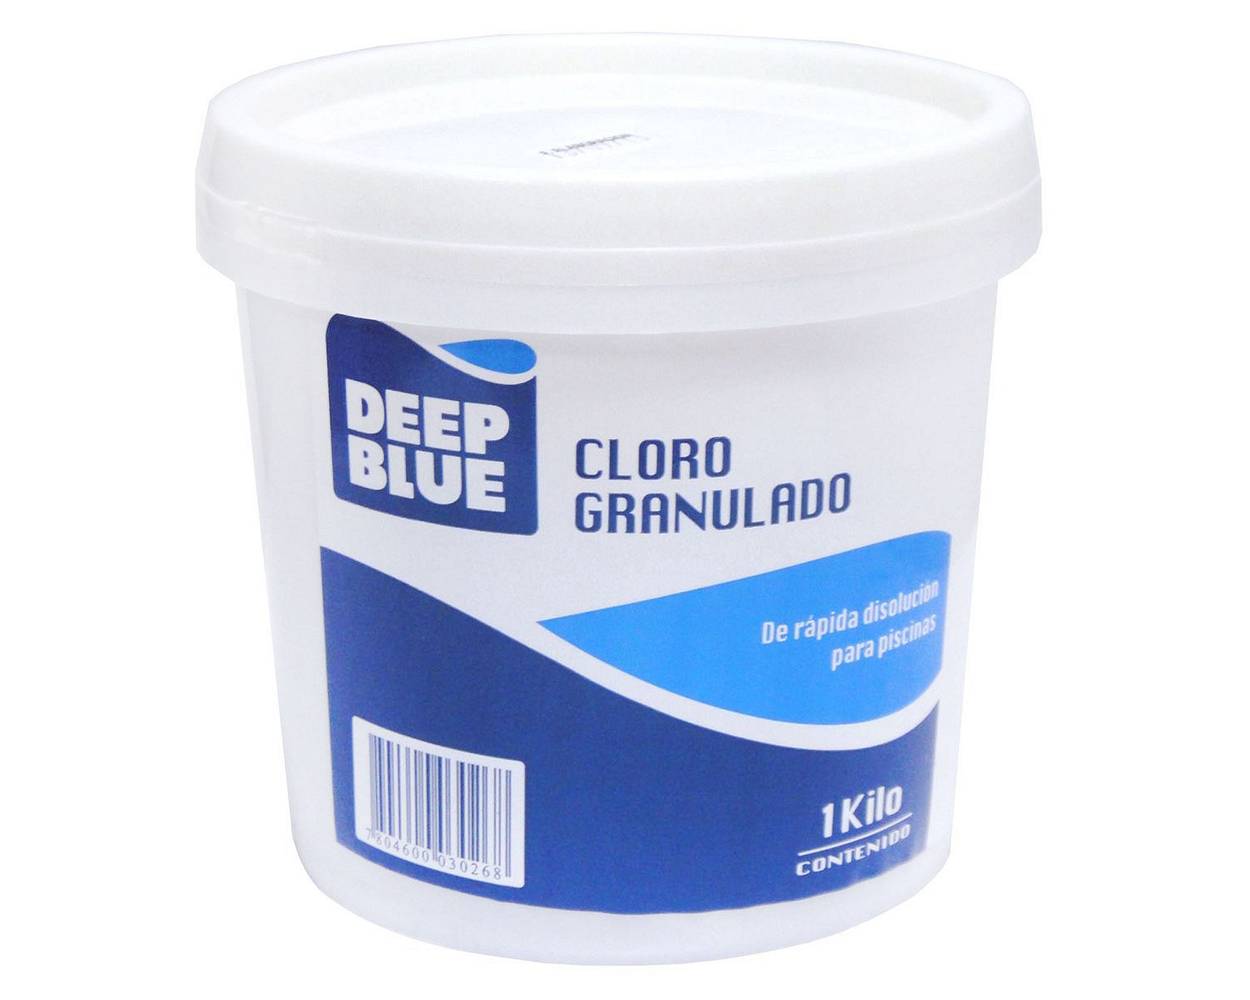 CLORO GRANULADO 1KG DEEP BLUE